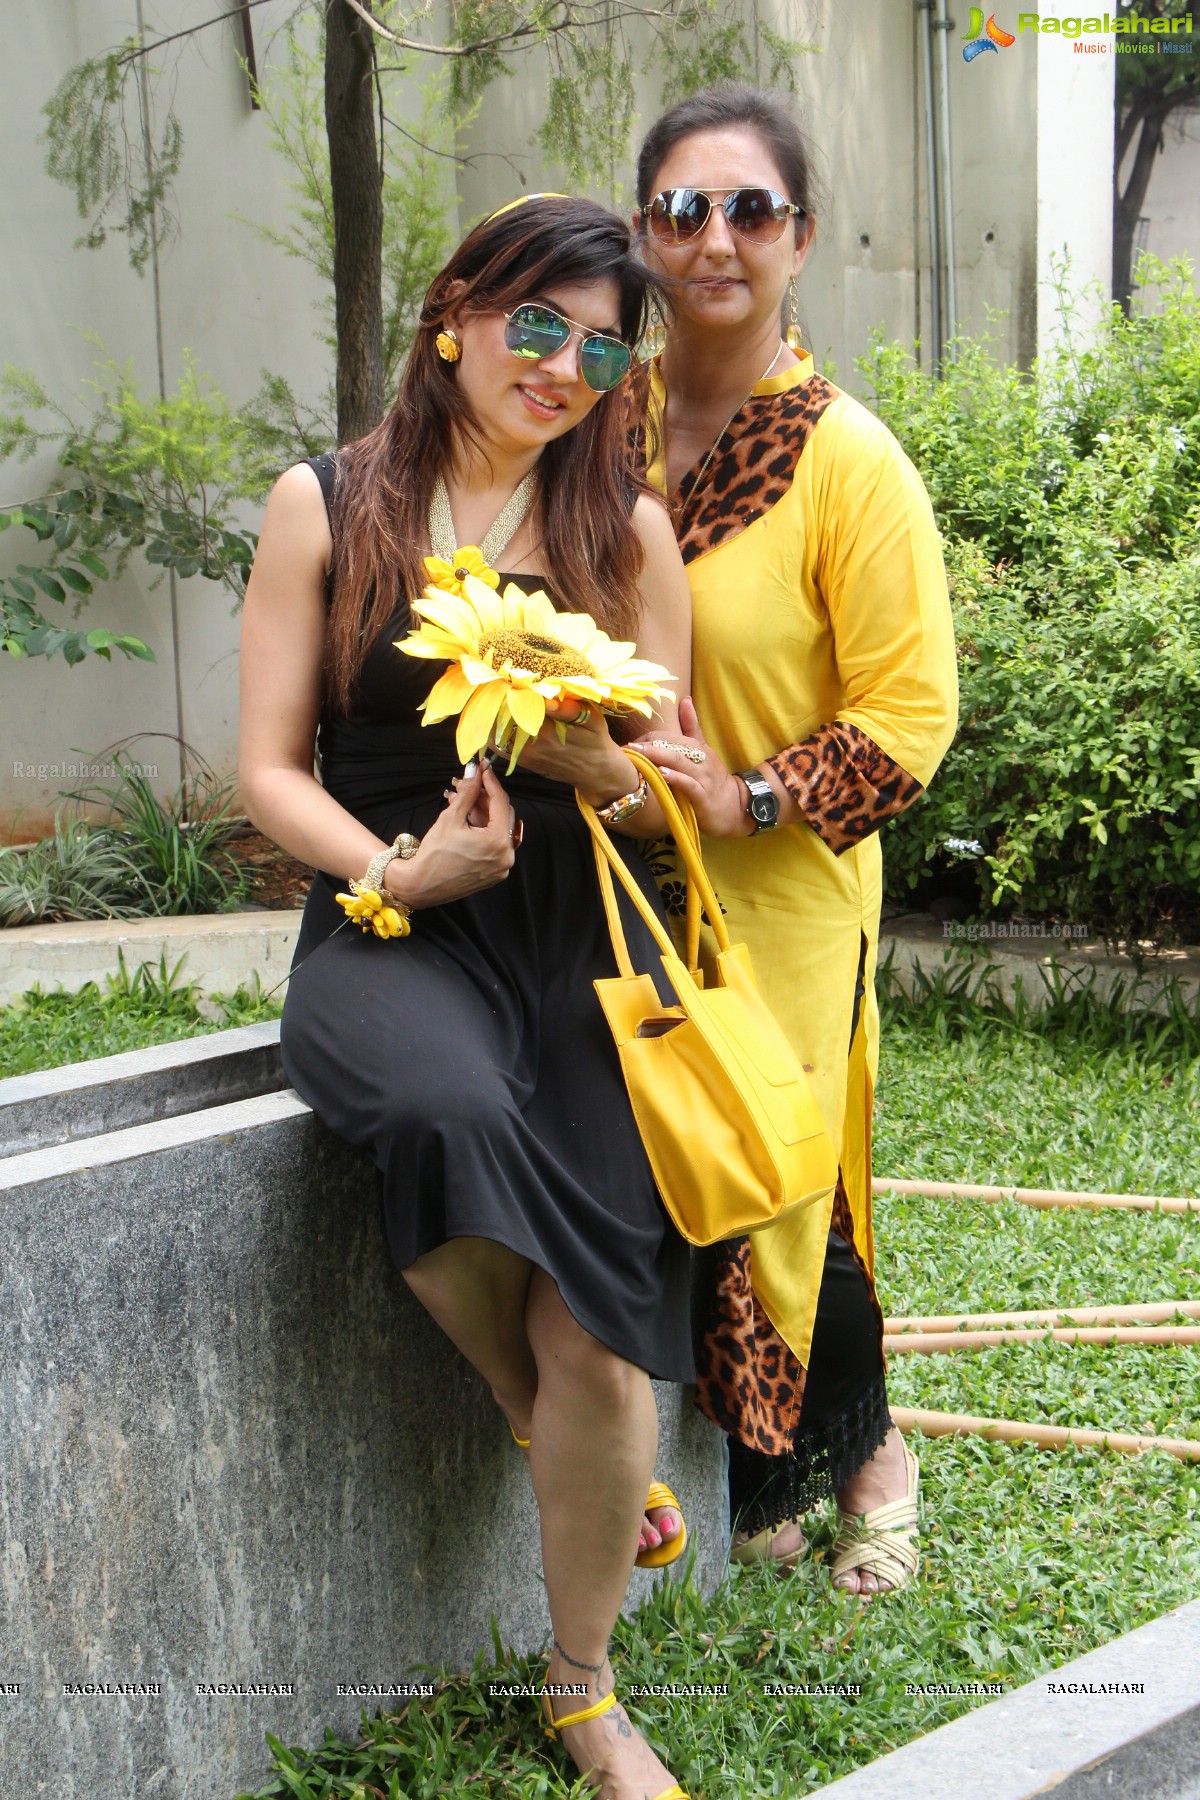 Phankar Innovative Minds Summer Sunflower Party at Hotel Marriott, Hyderabad